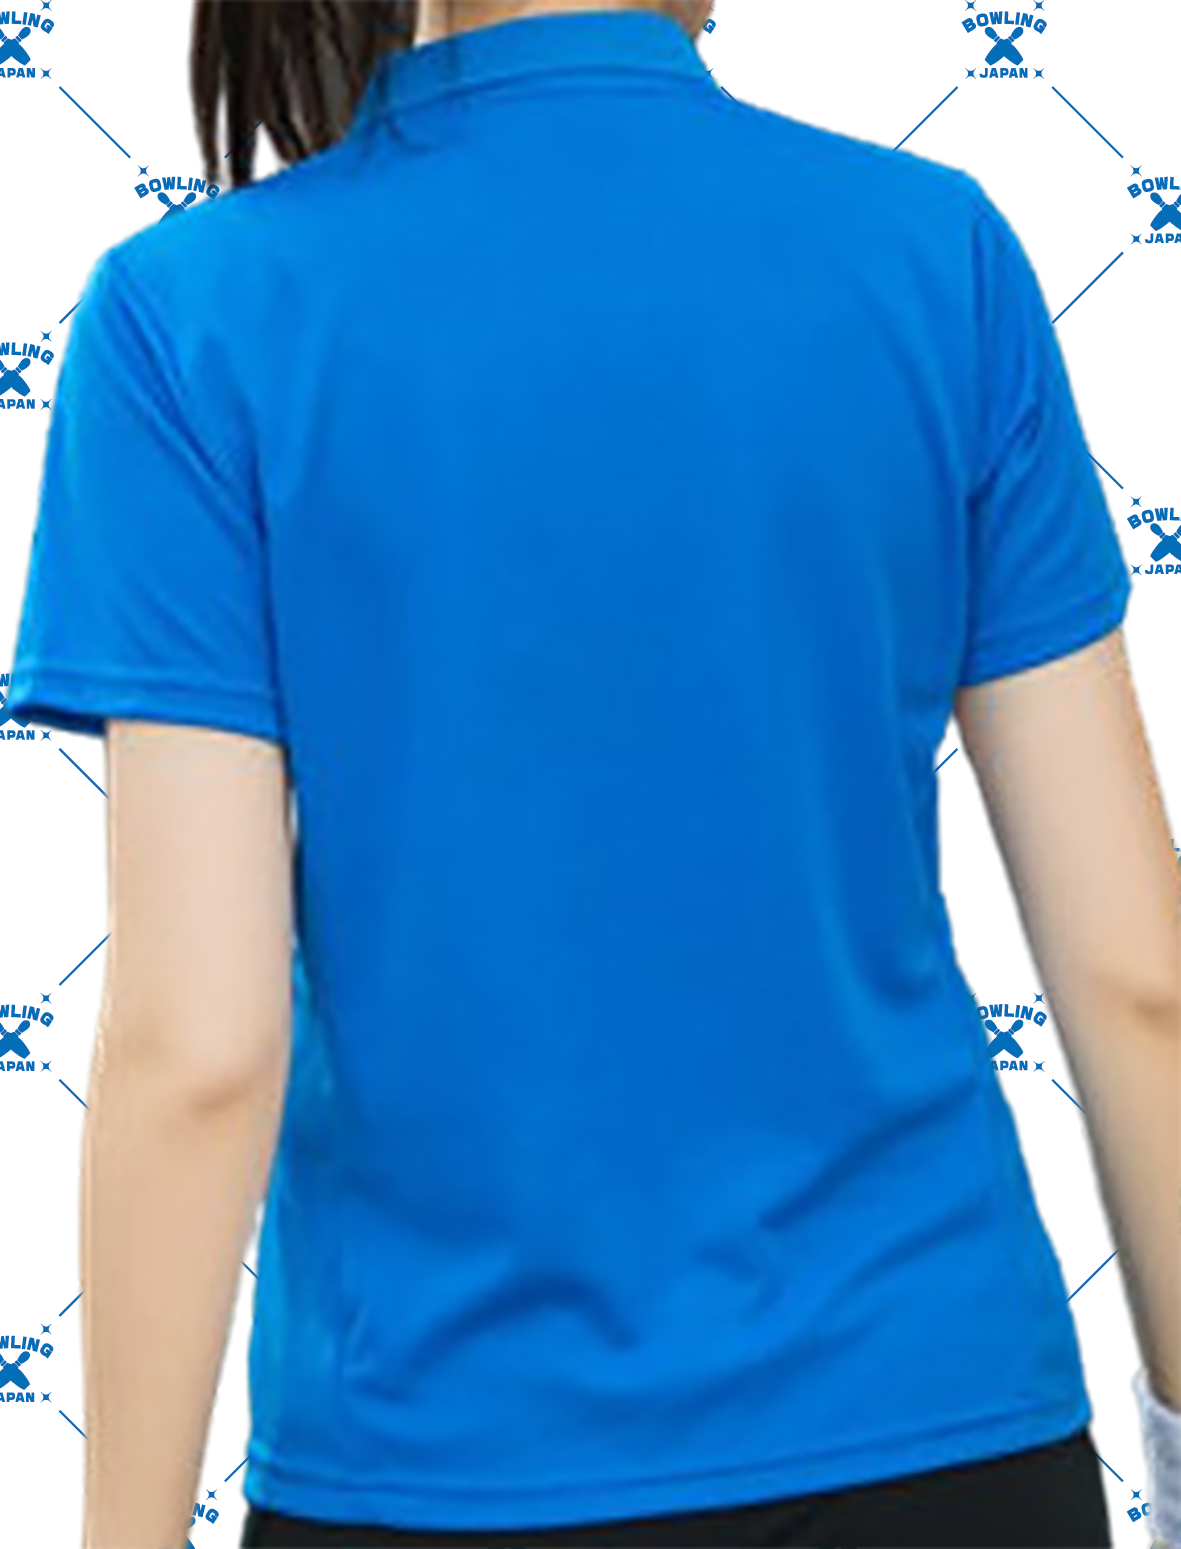 BOWLING-JAPANデザインポロシャツ5655-271024、名入れ１行無料(ポリエステル100%)全２色-11サイズ、納期１〜２週間、送料無料画像